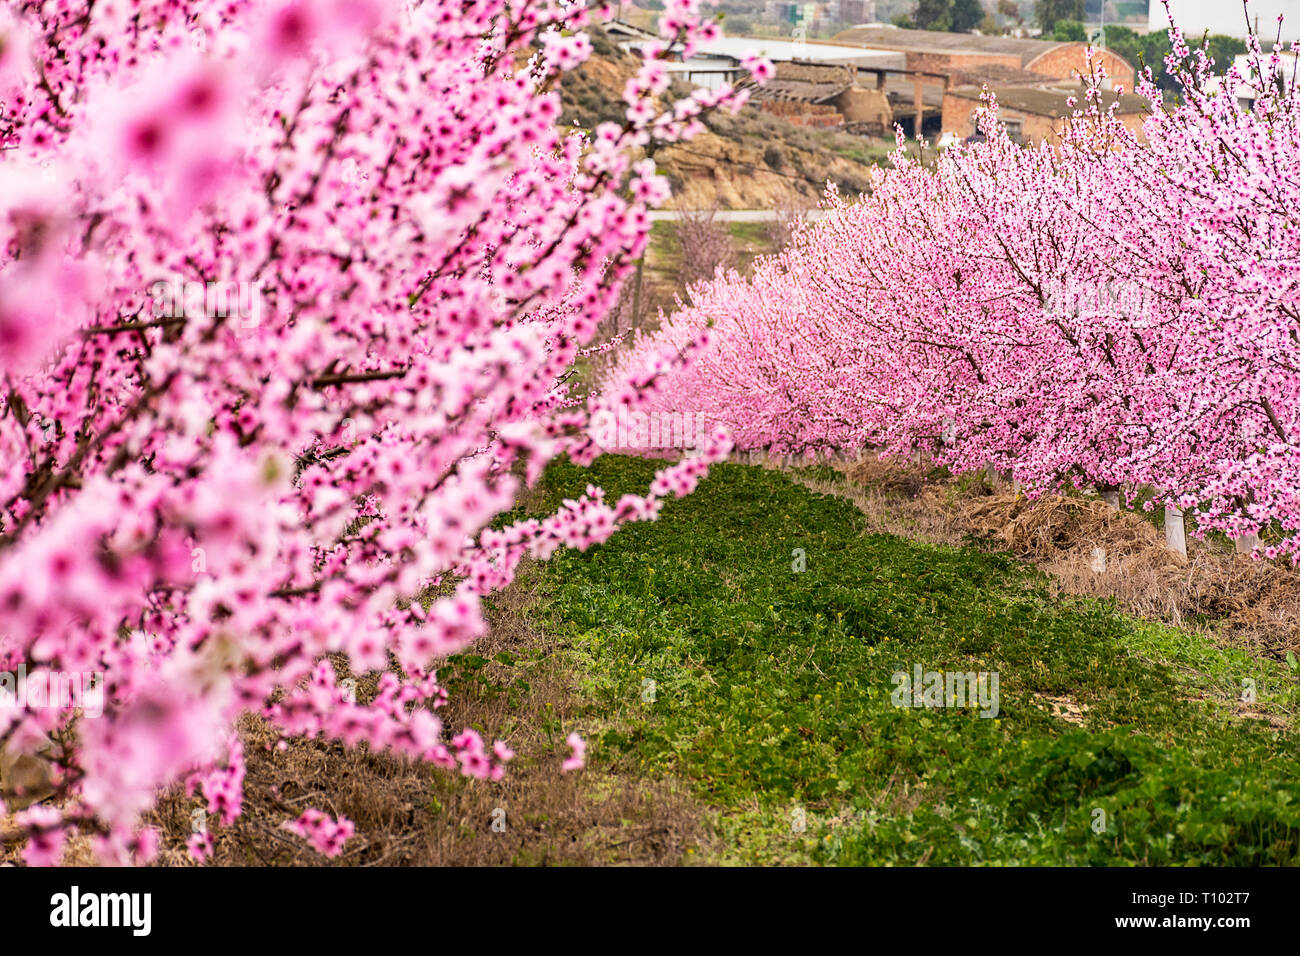 Feld mit Reihen von Pfirsichbäumen. mit Ästen voll mit zarten rosa Blumen bei Sonnenaufgang. Ruhige Atmosphäre. Geheimnisvoll. Aitona, Alpicat. Stockfoto